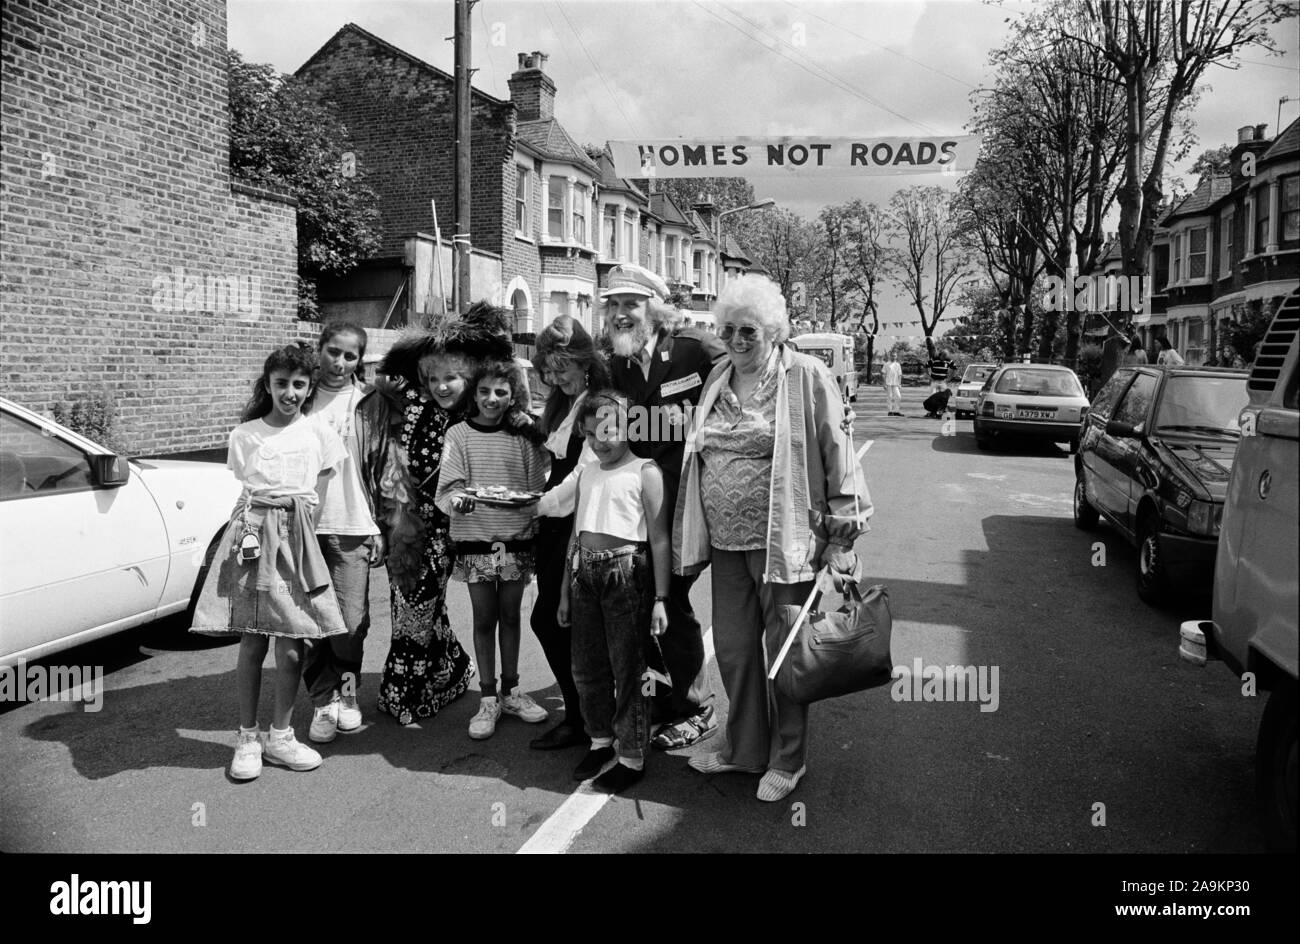 Les routes des maisons non protester contre le bâtiment M11 Link Road, route de Clermont, Leyton, Londres 20 Juillet 1991 Banque D'Images